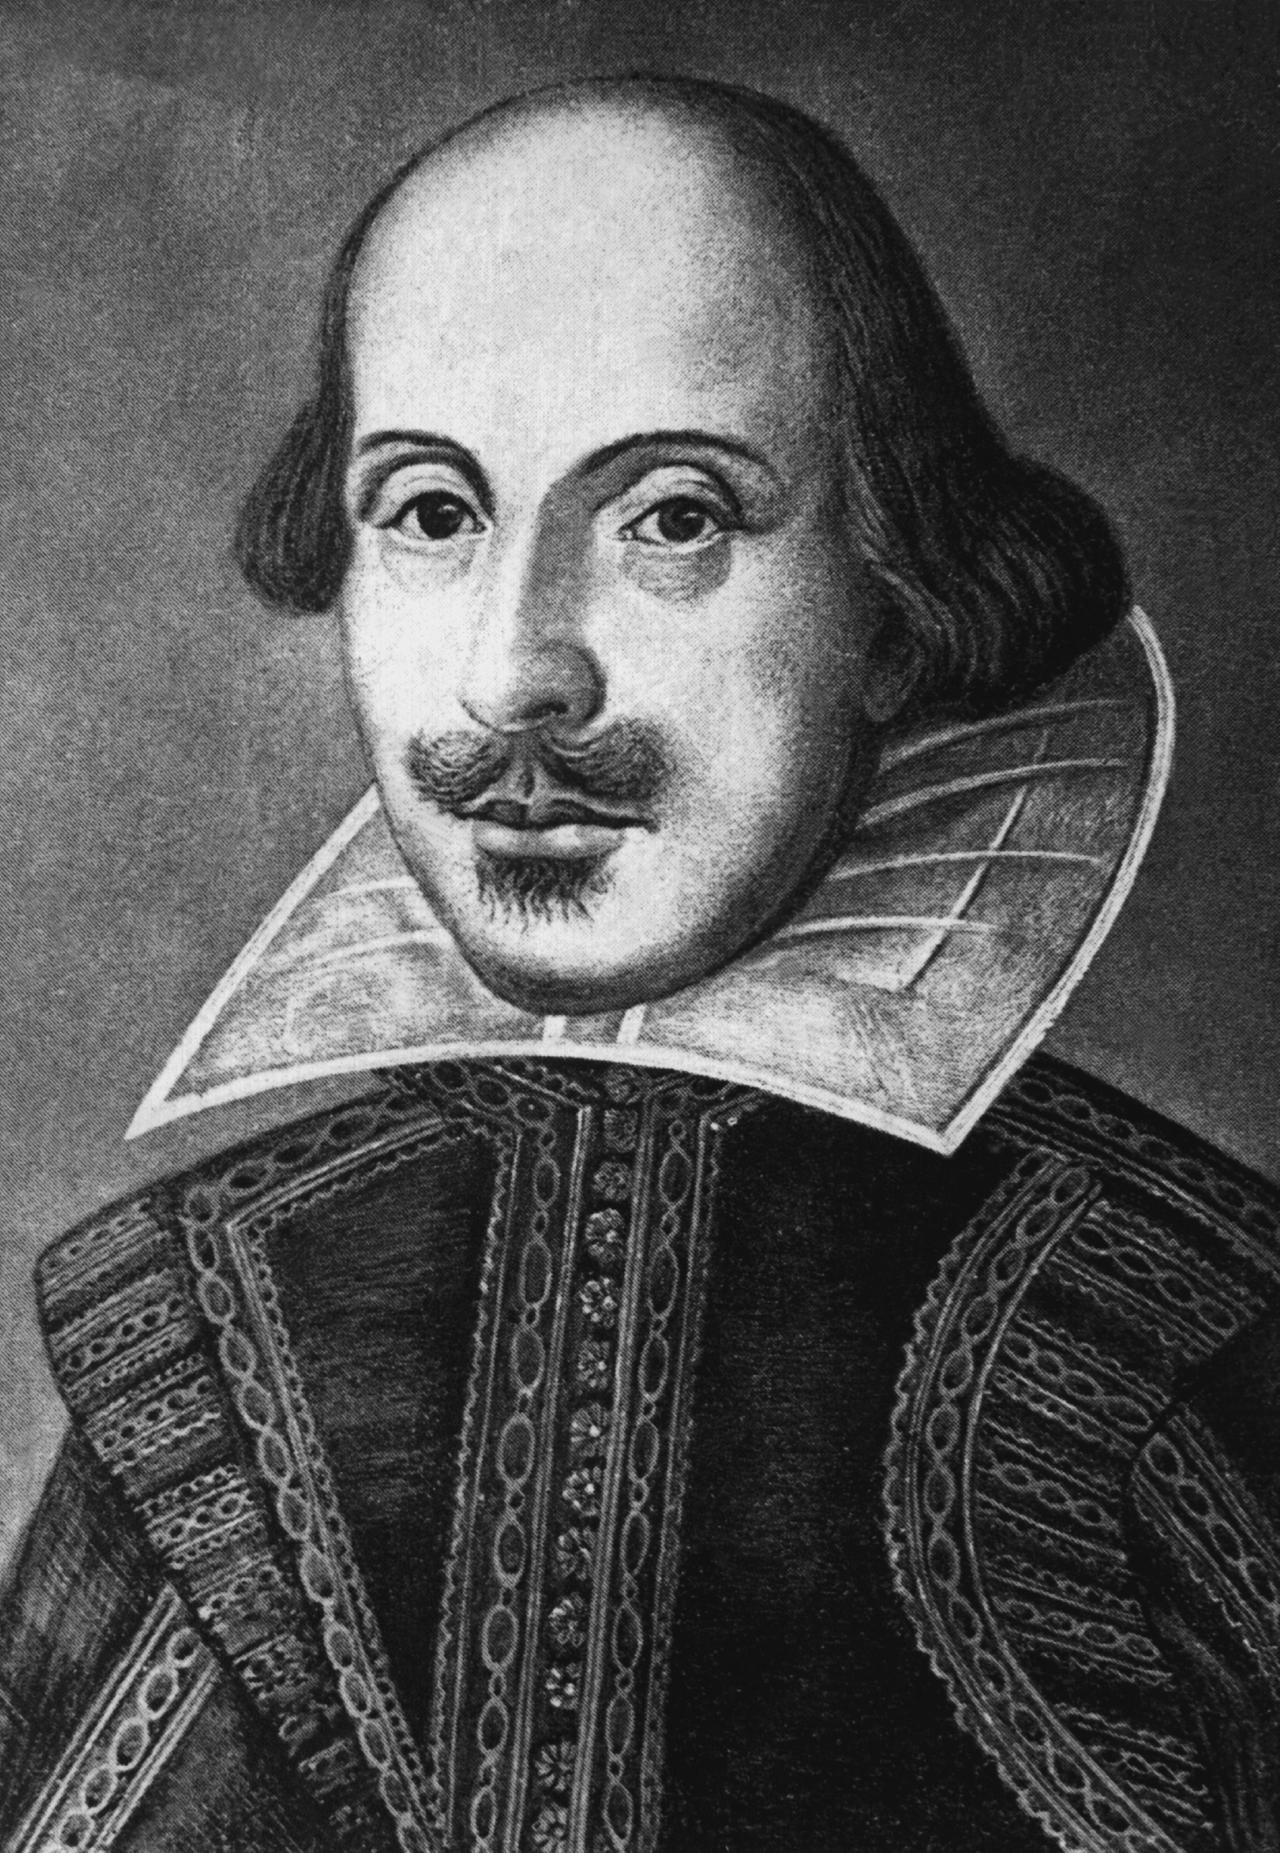 Zeitgenössische Darstellung des erfolgreichsten Bühnenautors aller Zeiten: William Shakespeare.